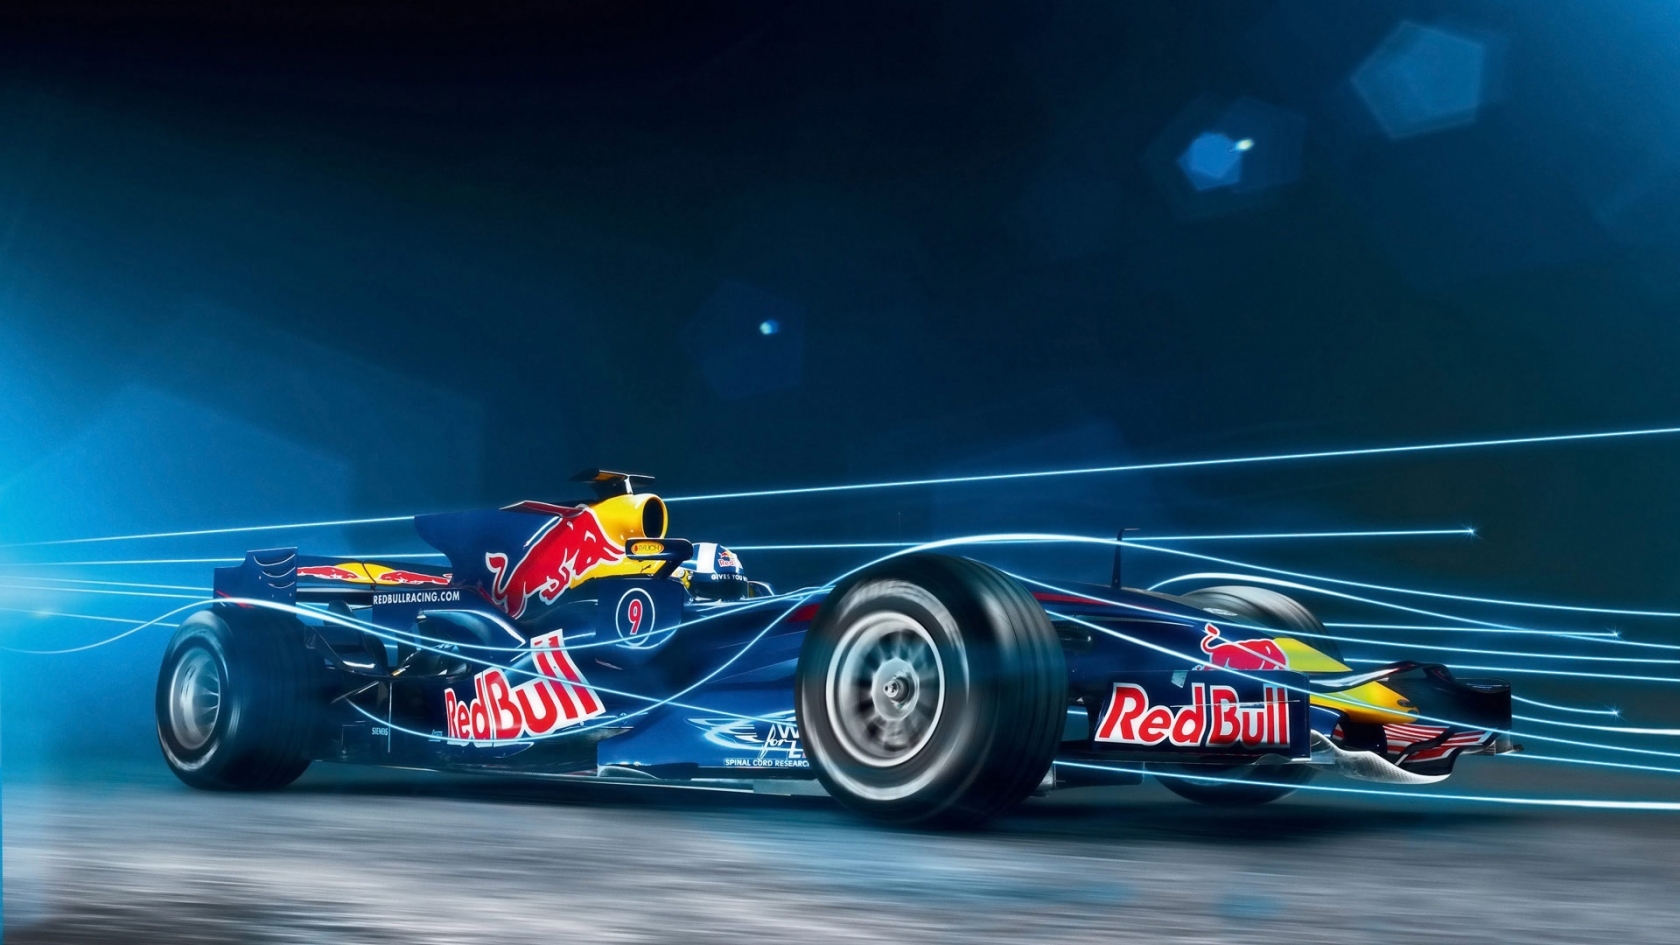 Red Bull Formula 1 for 1680 x 945 HDTV resolution